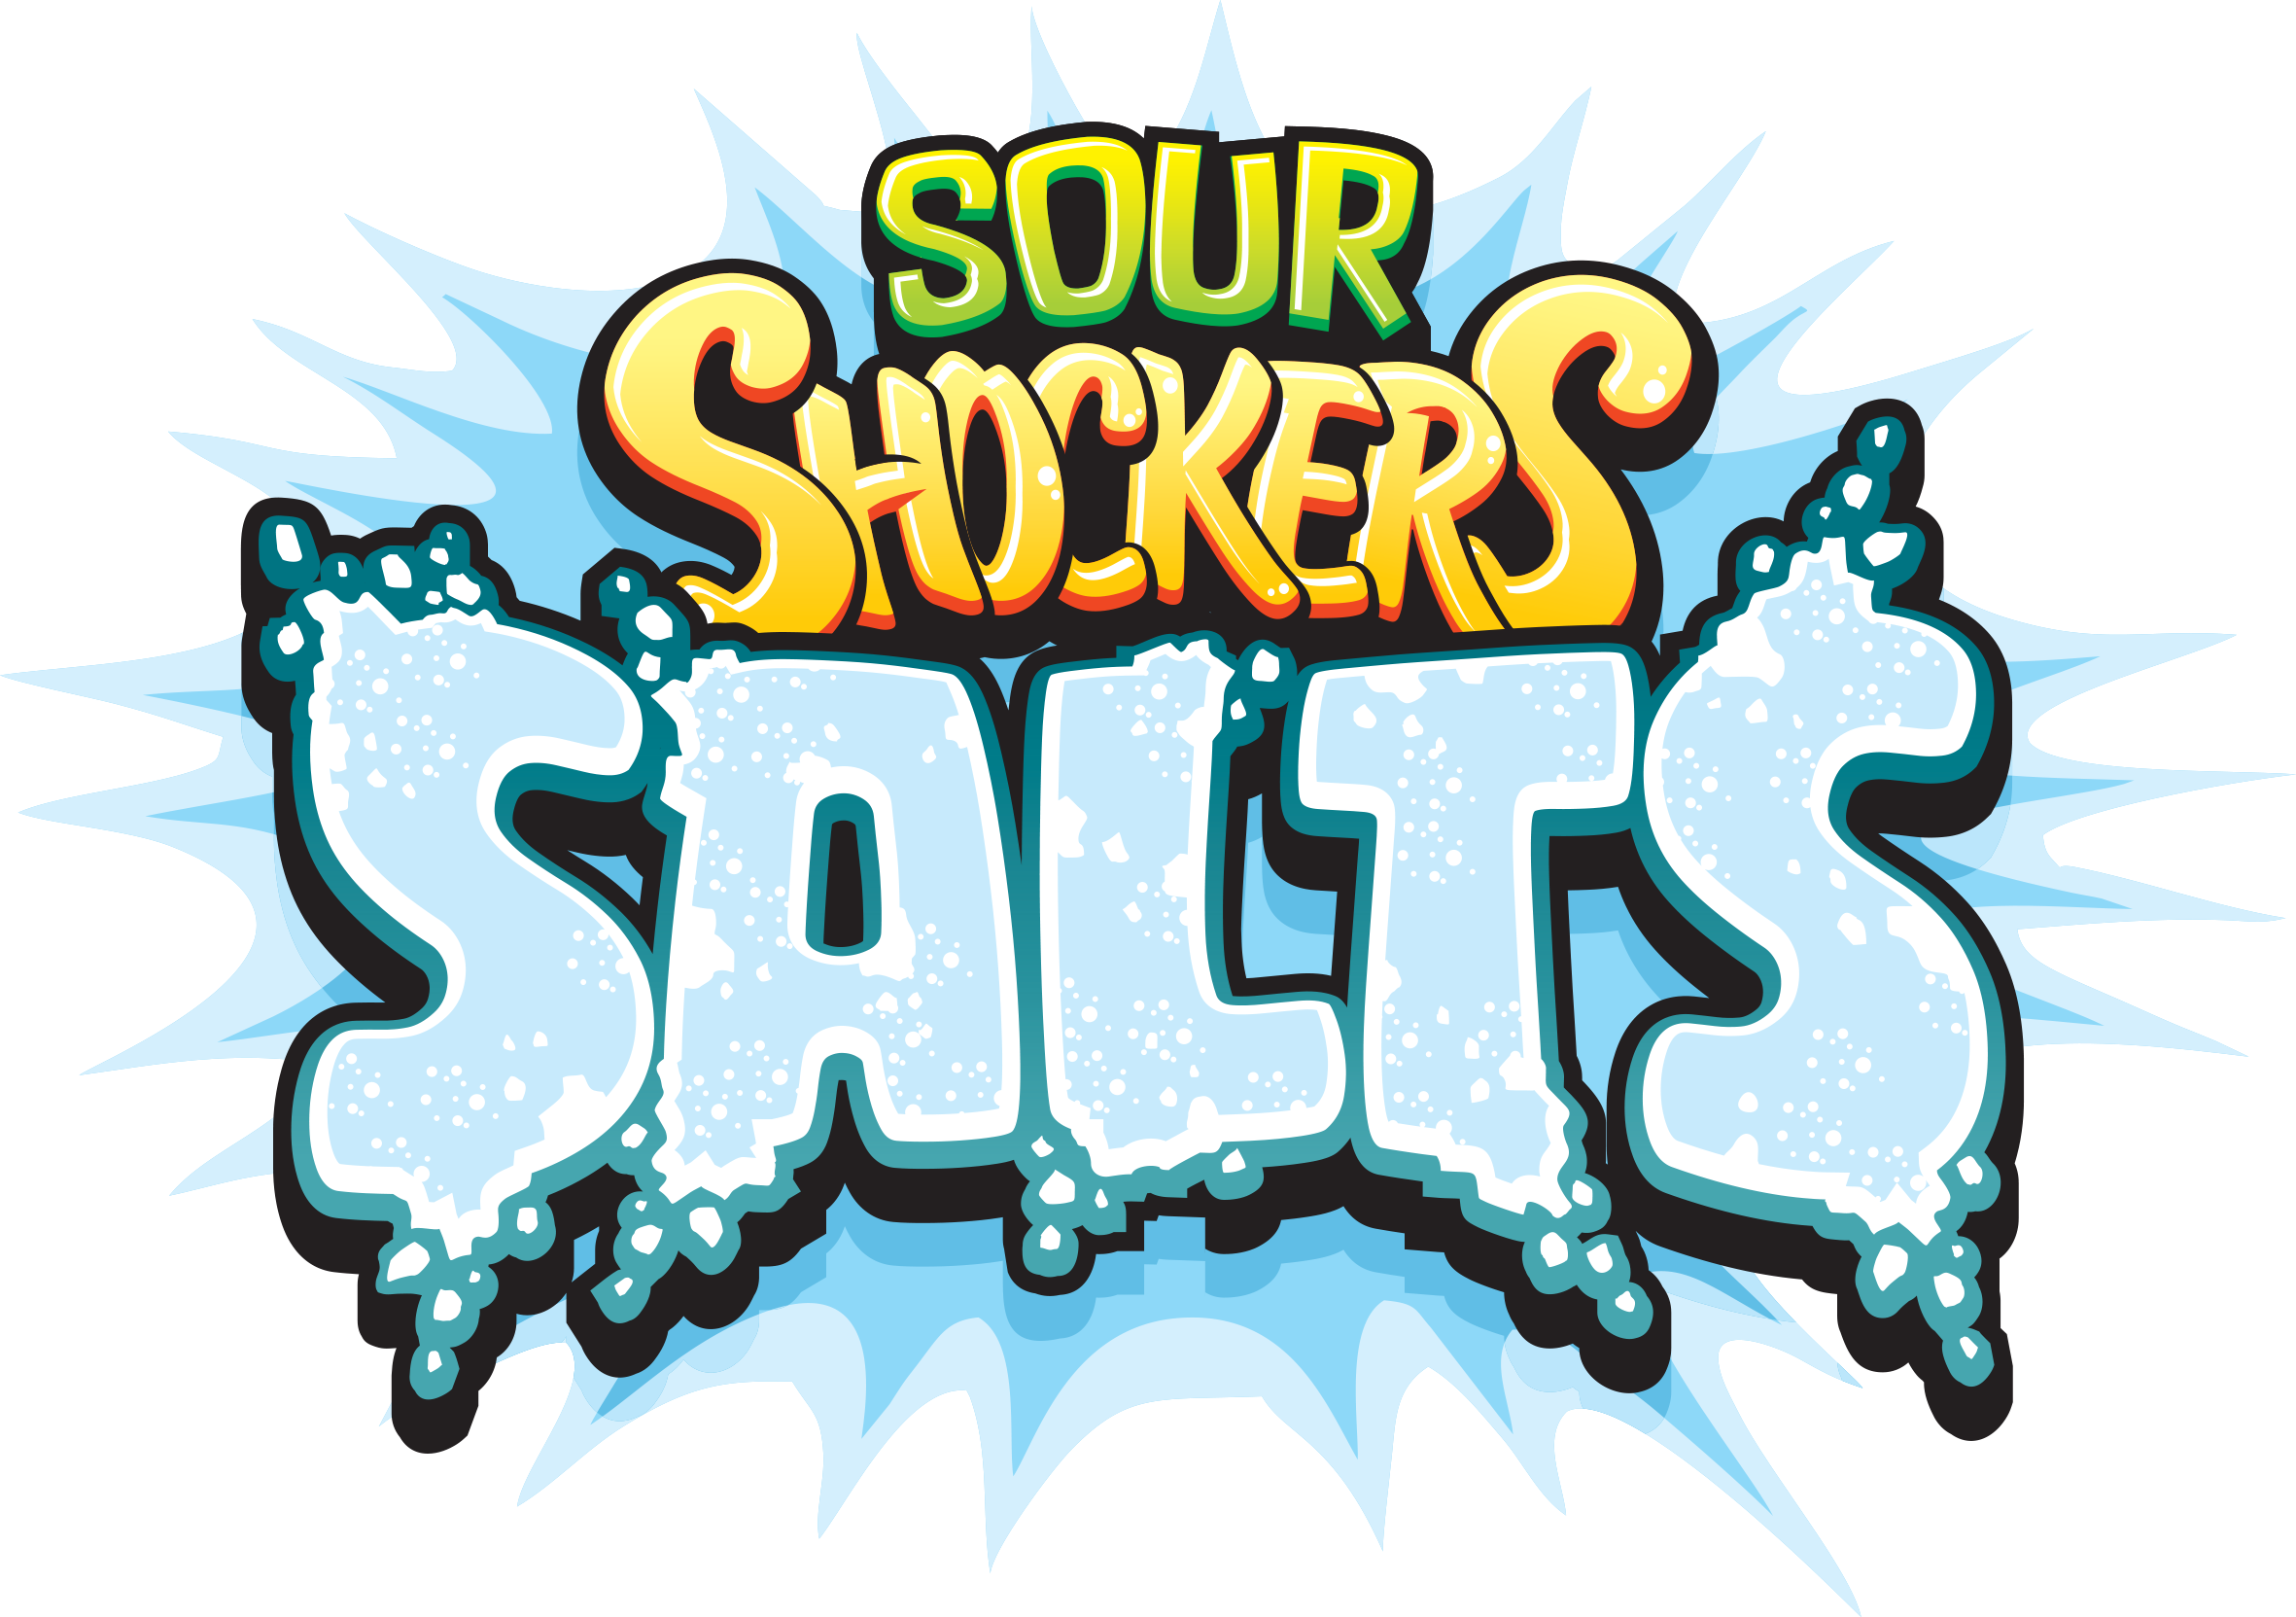 Sour Shocker Salts